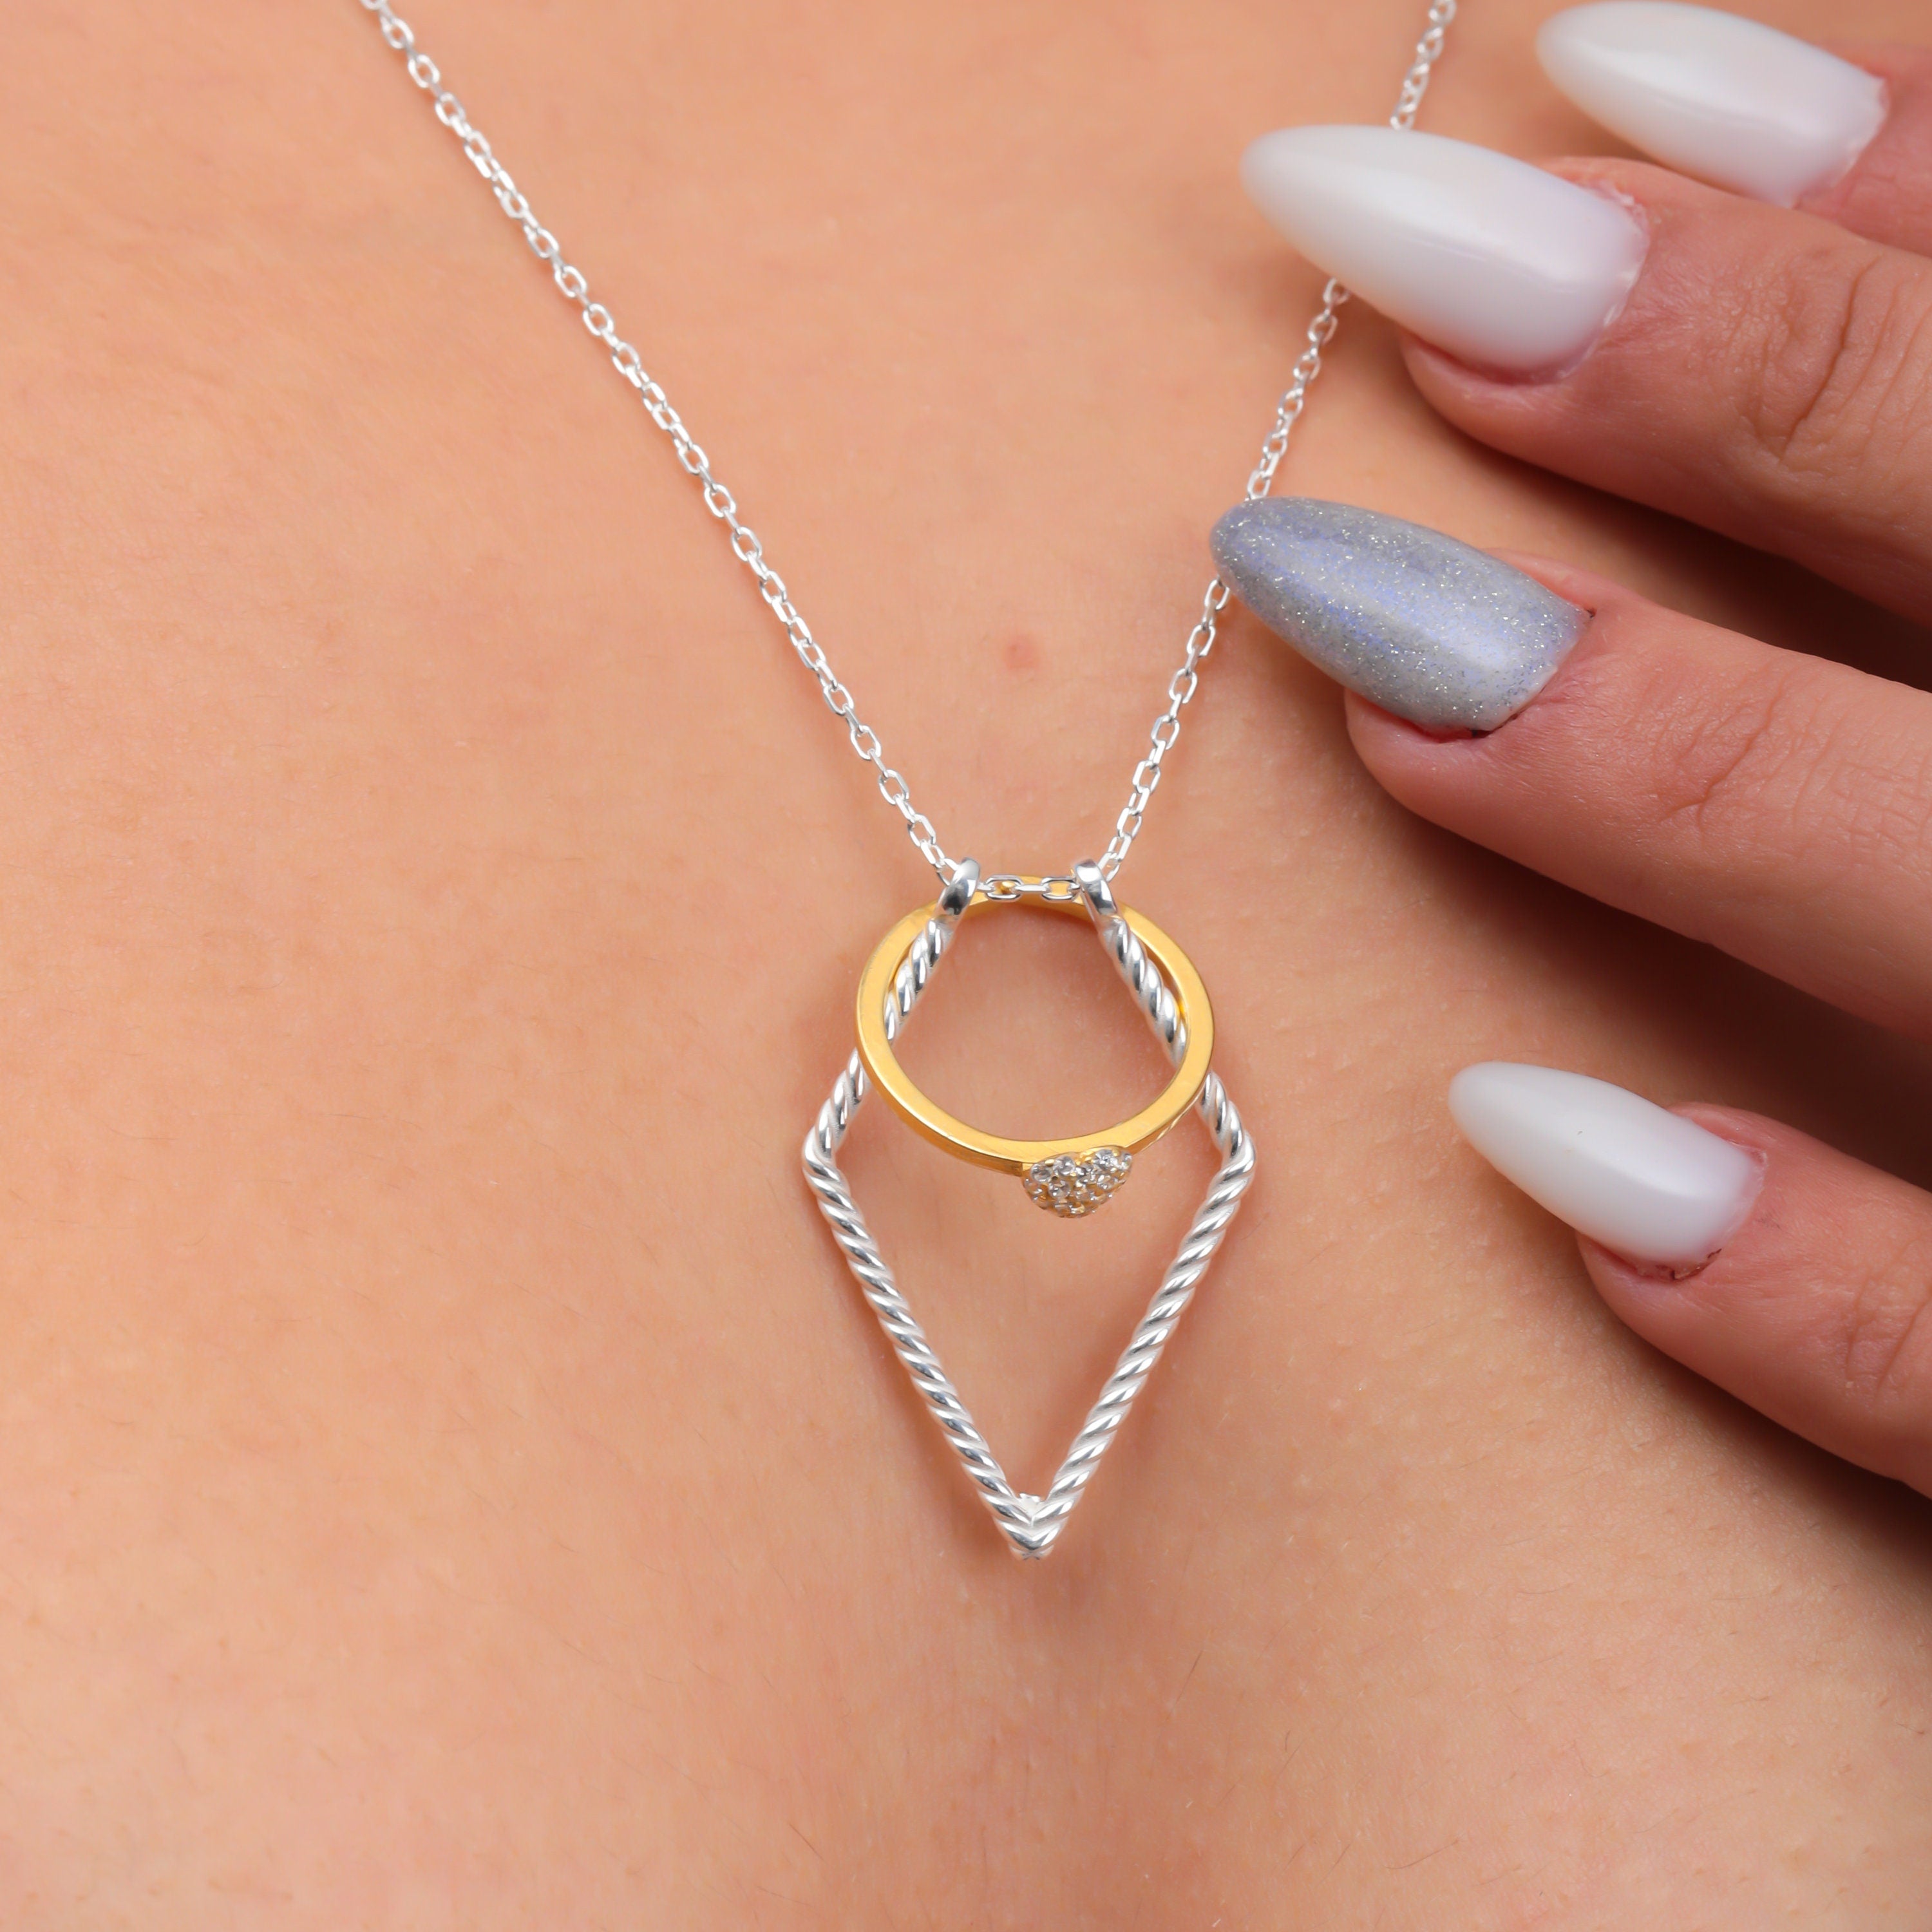 Wedding Ring Necklace Holder Men - Shop on Pinterest